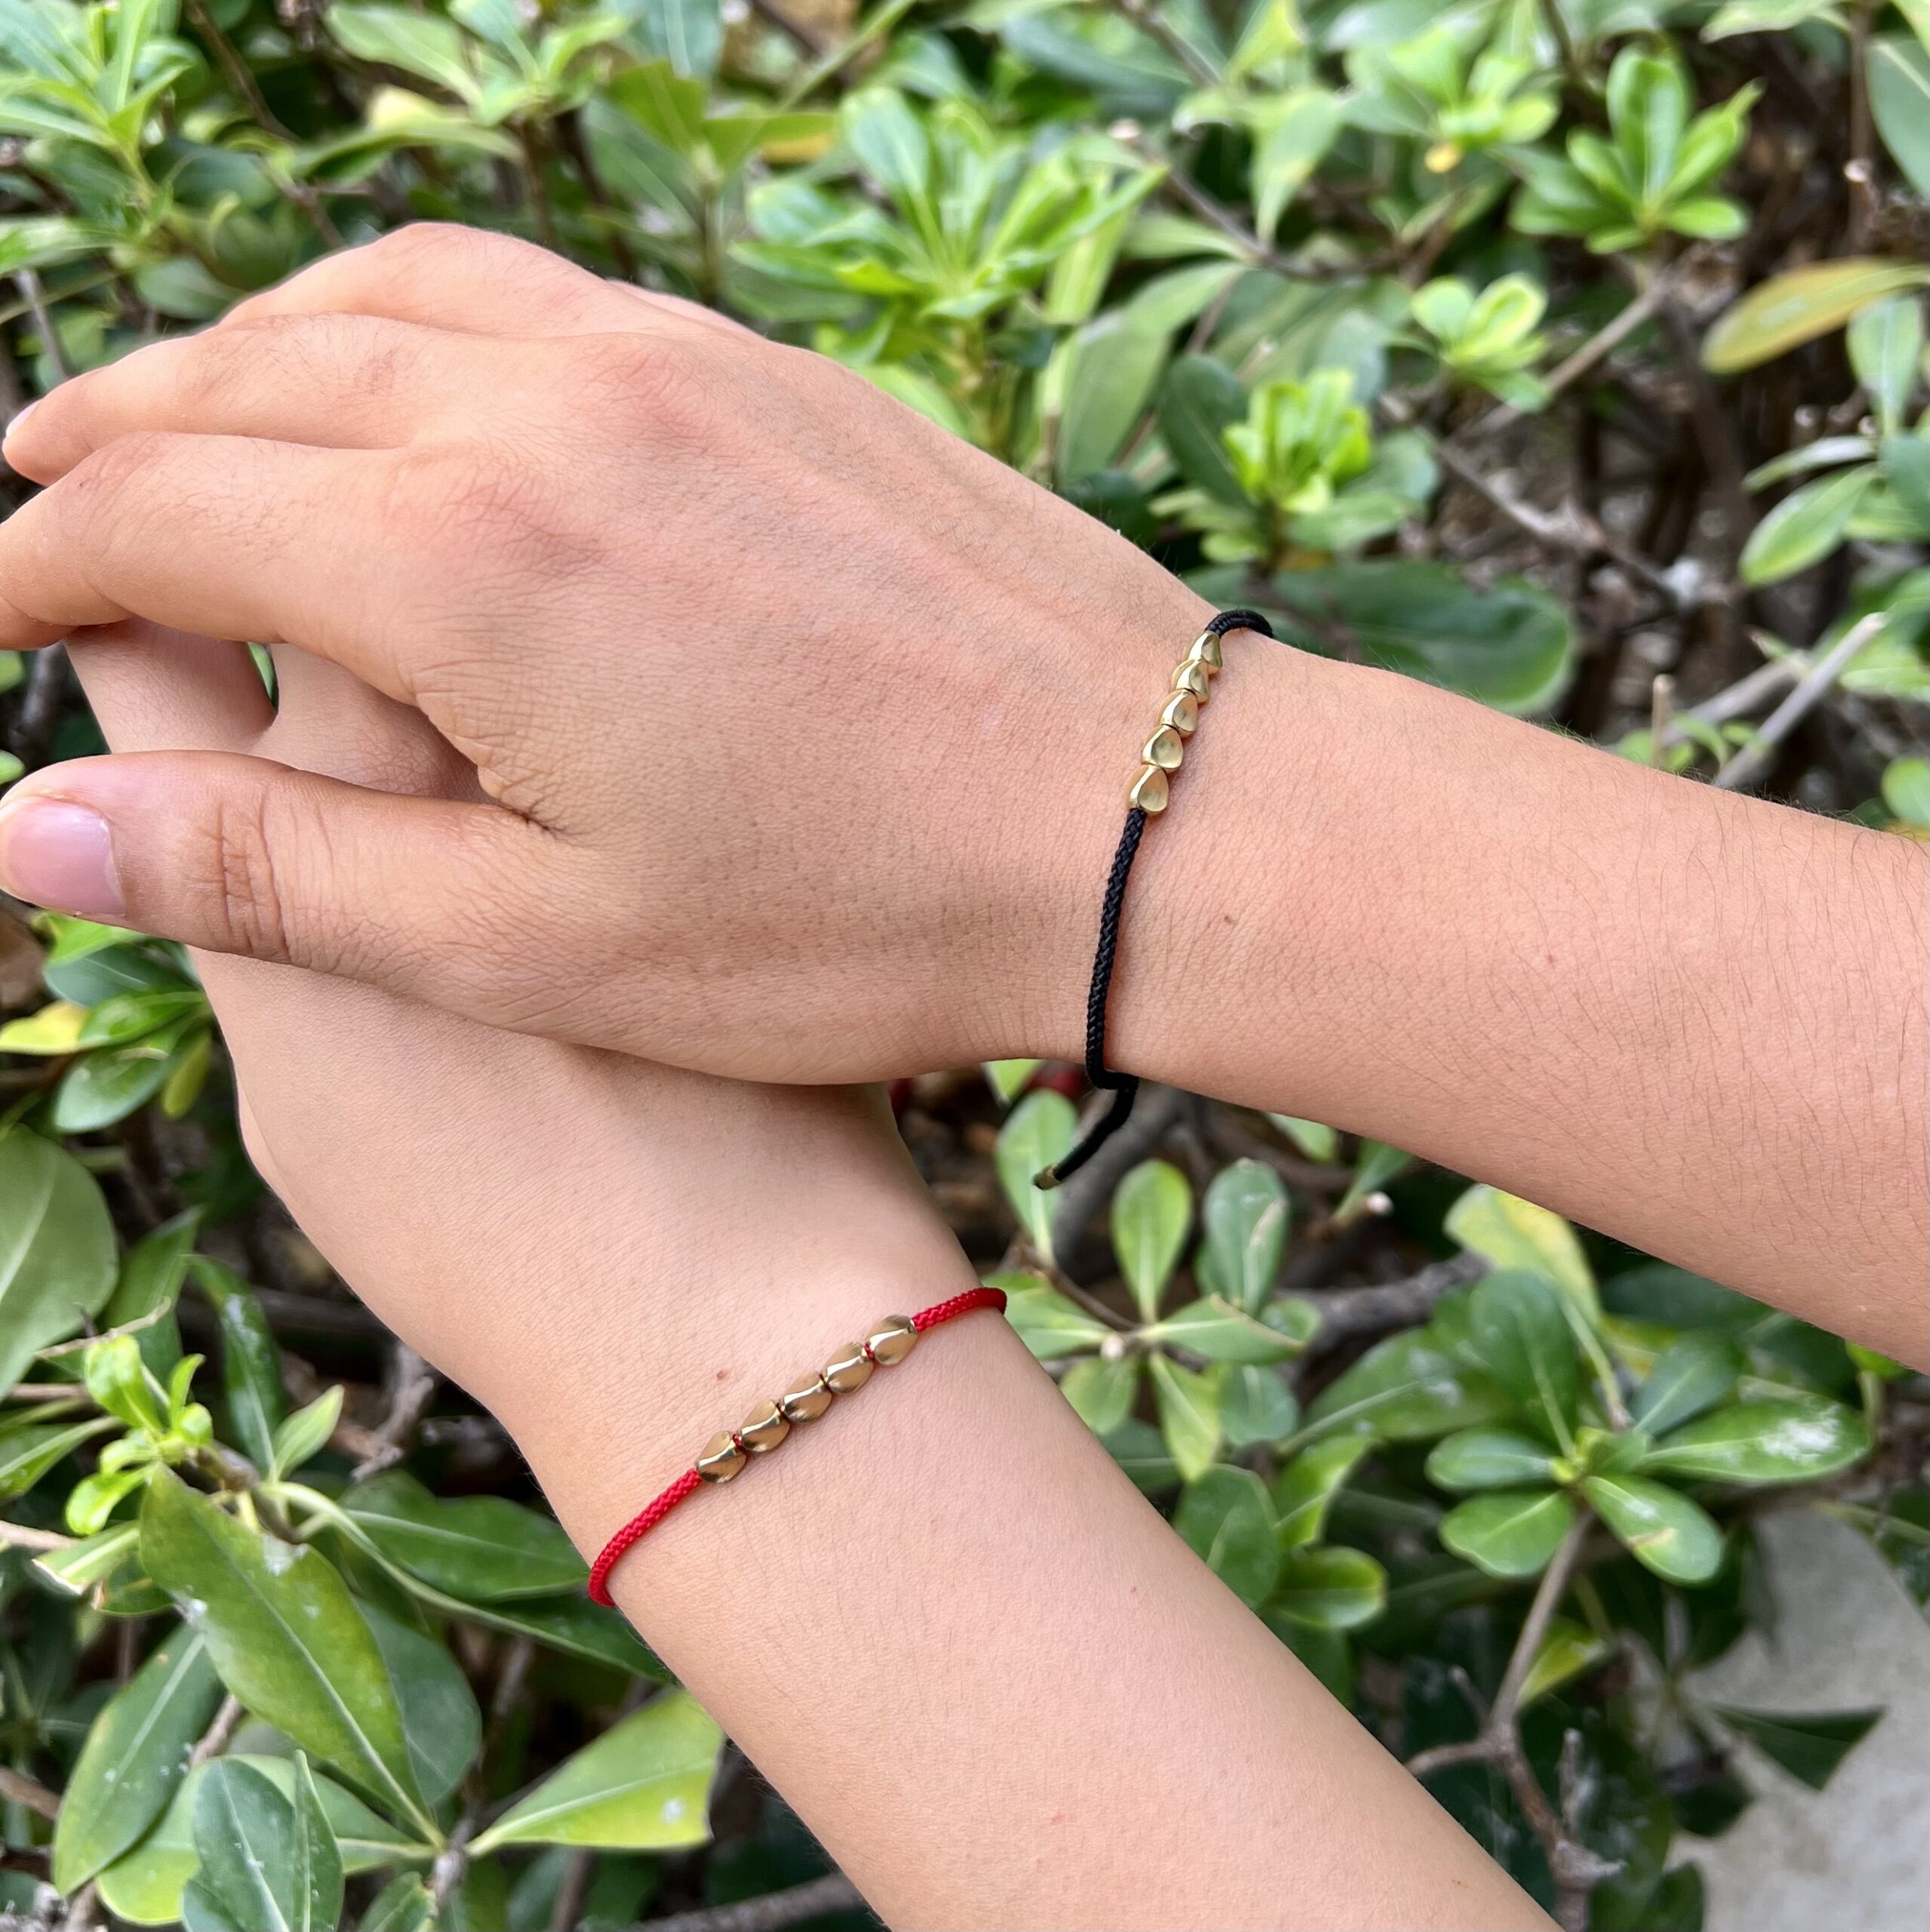 Le bracelet "Flot" en Fil rouge porté par un couple